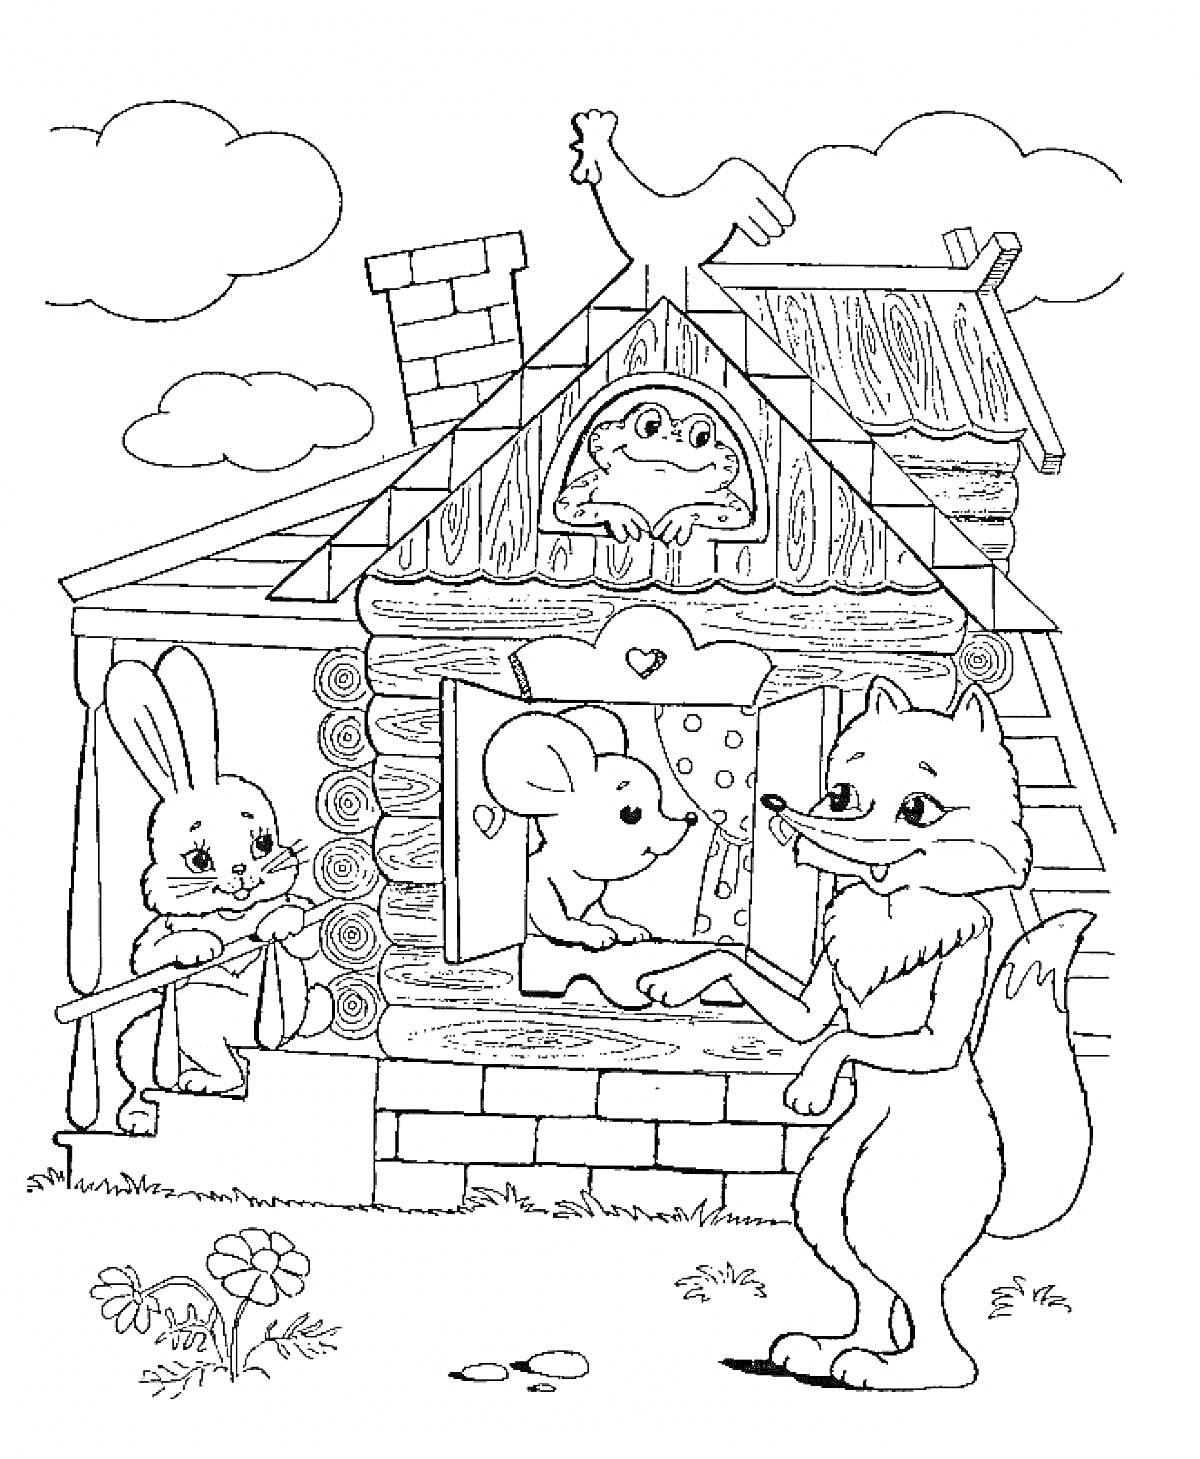 Раскраска Теремок с мышкой, зайцем, лисой и петухом на крыше